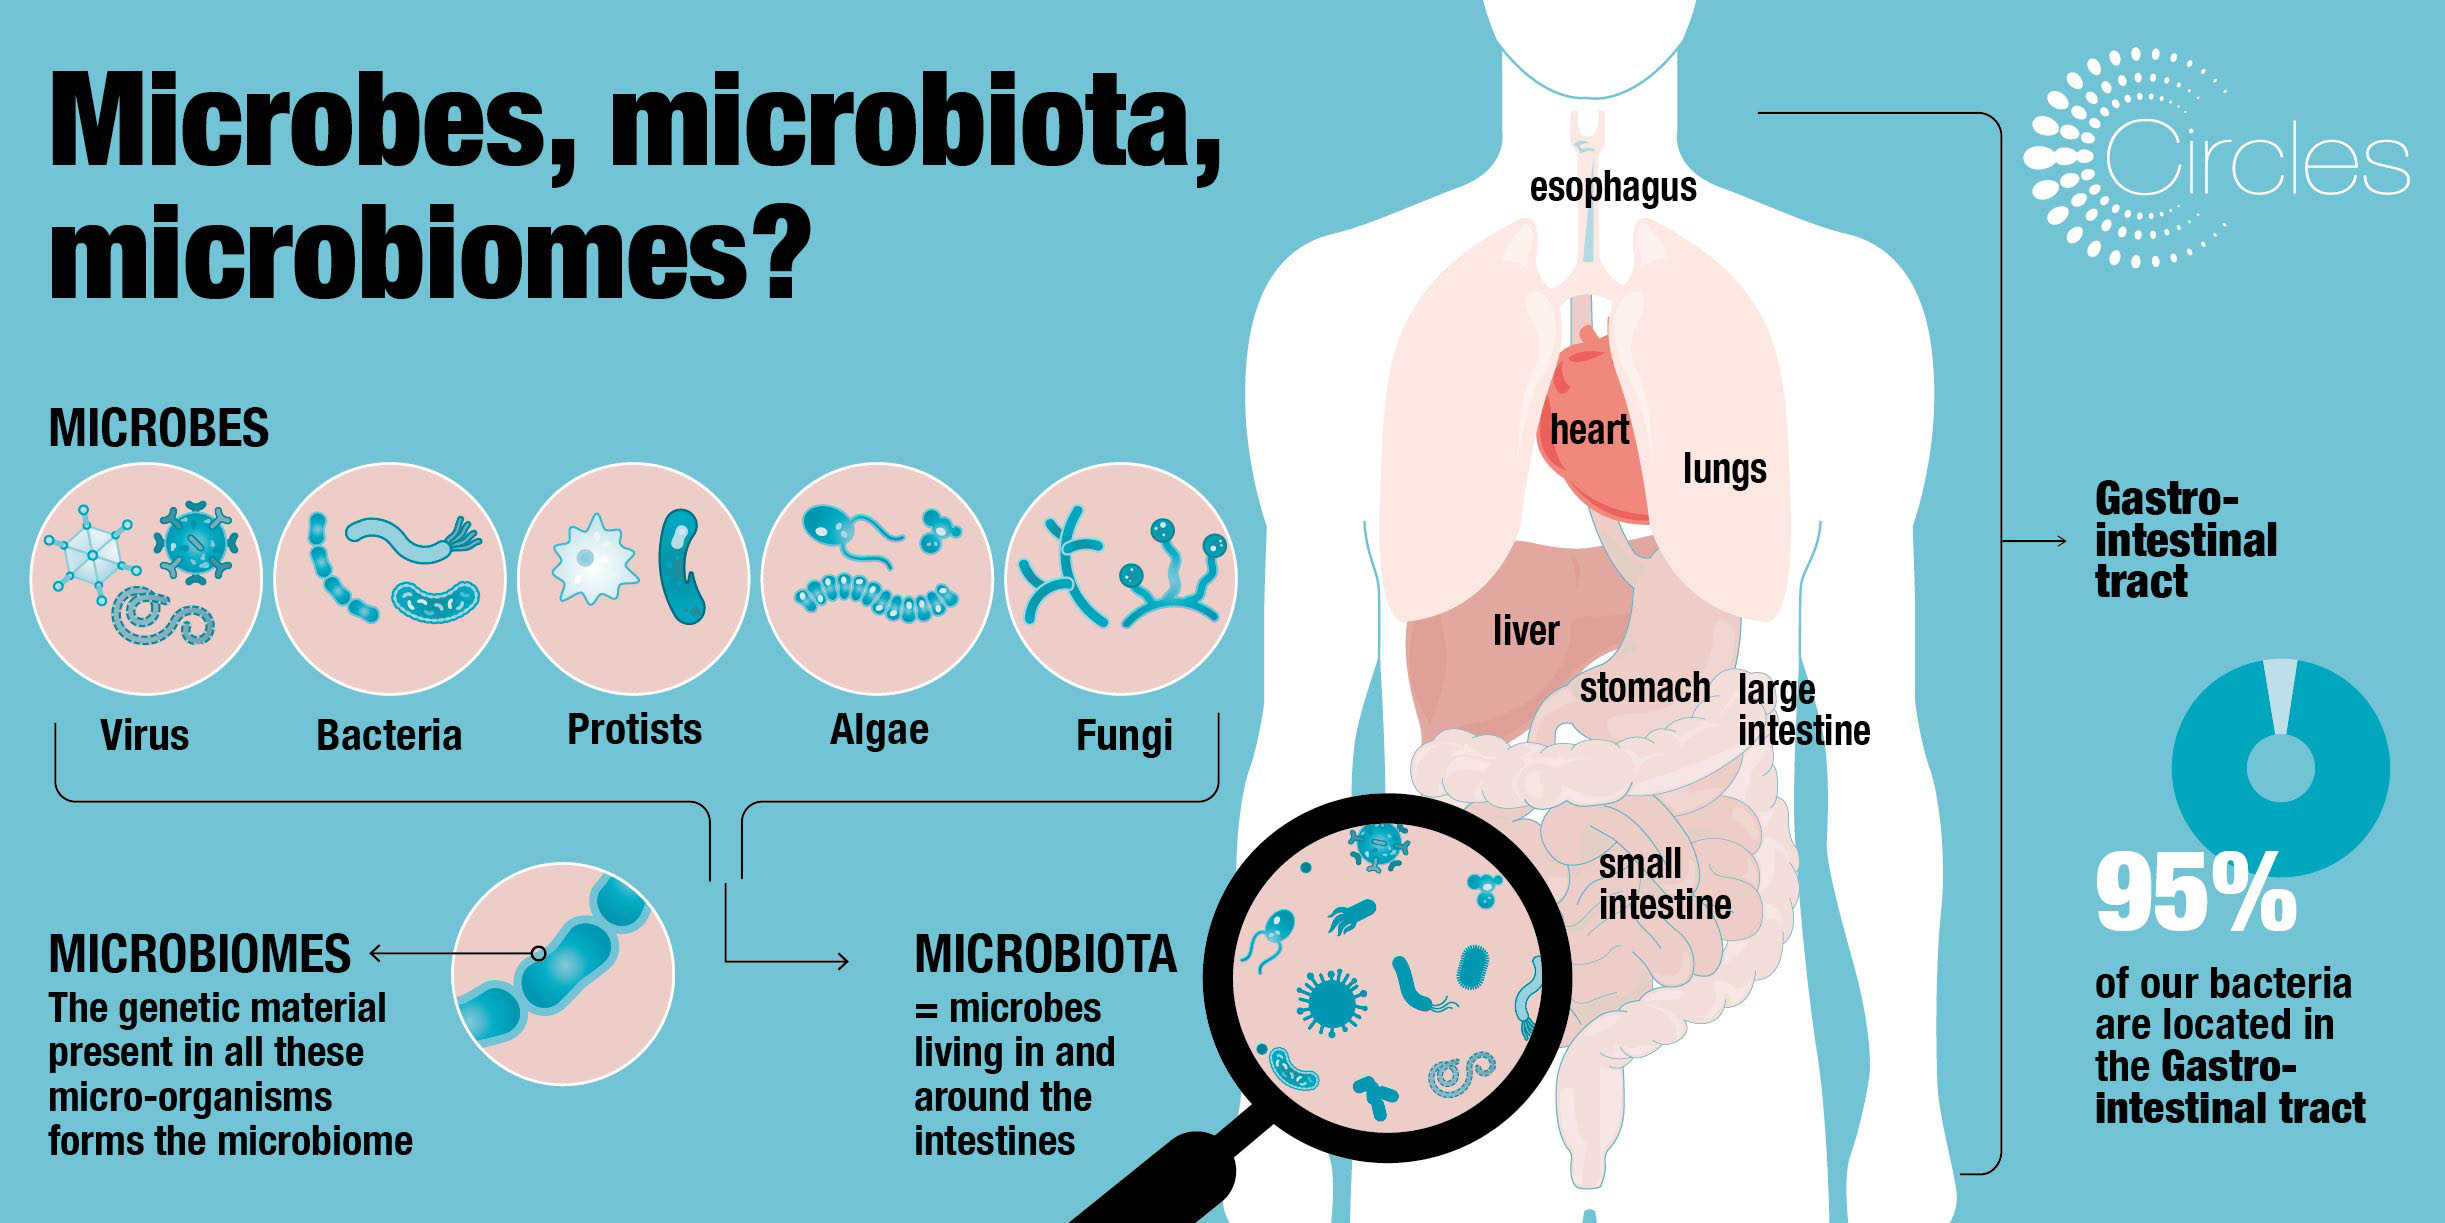 Microbes, microbiota, microbiomes